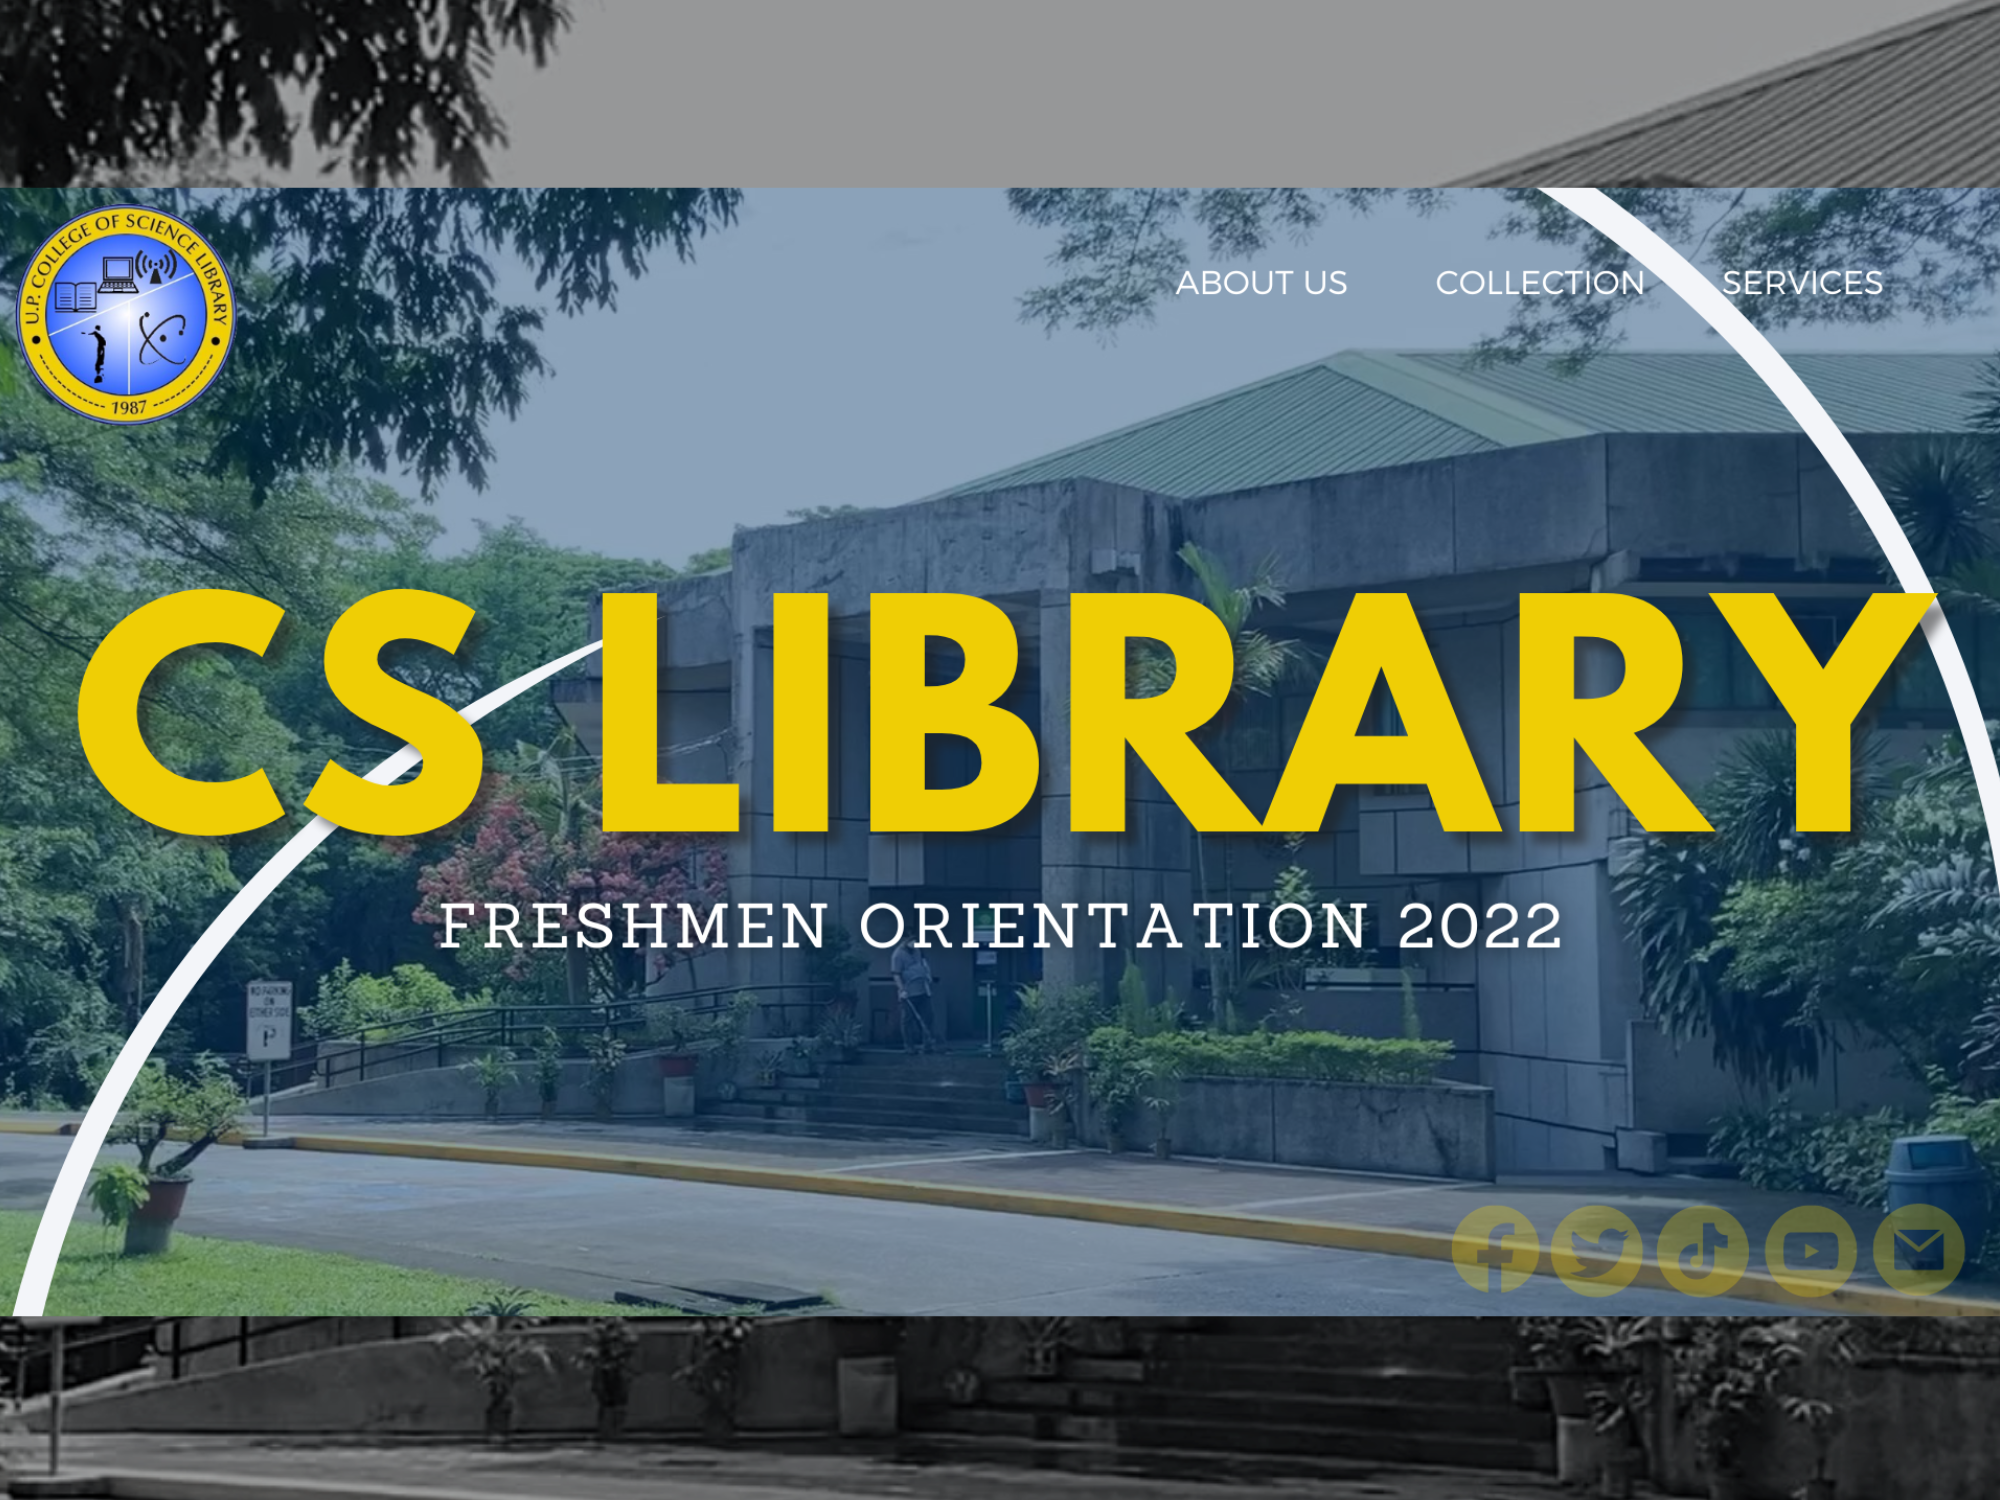 Freshmen Library Orientation 2022